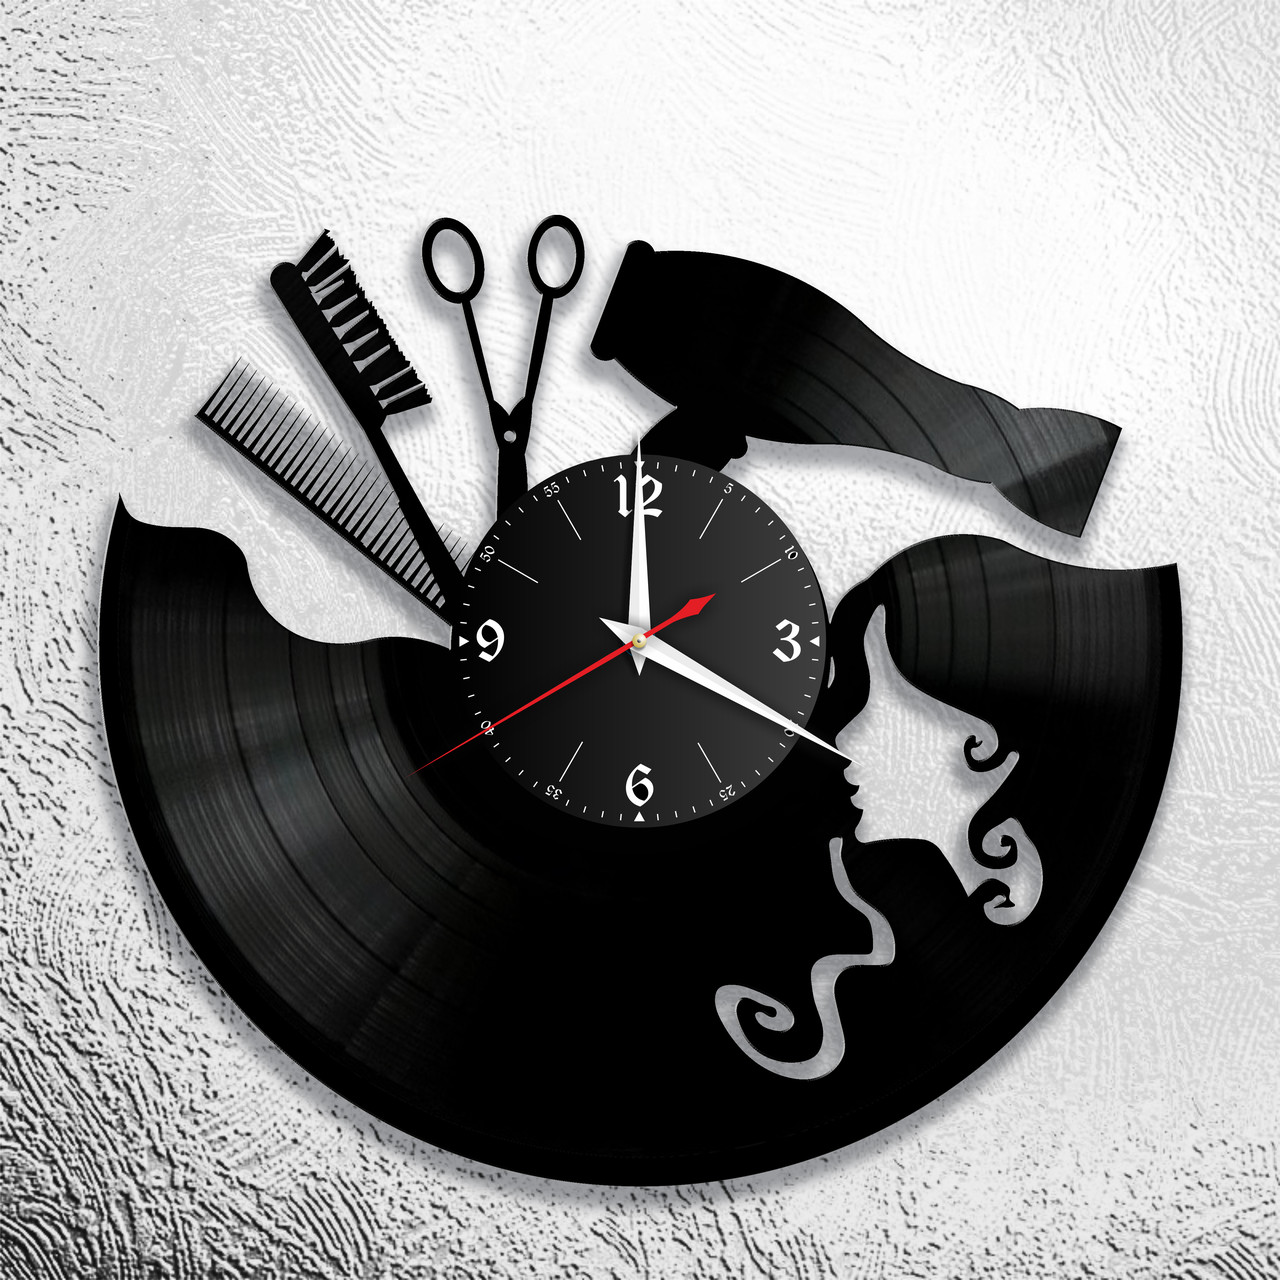 Оригинальные часы из виниловых пластинок "Парикмахерская" версия 3, фото 1